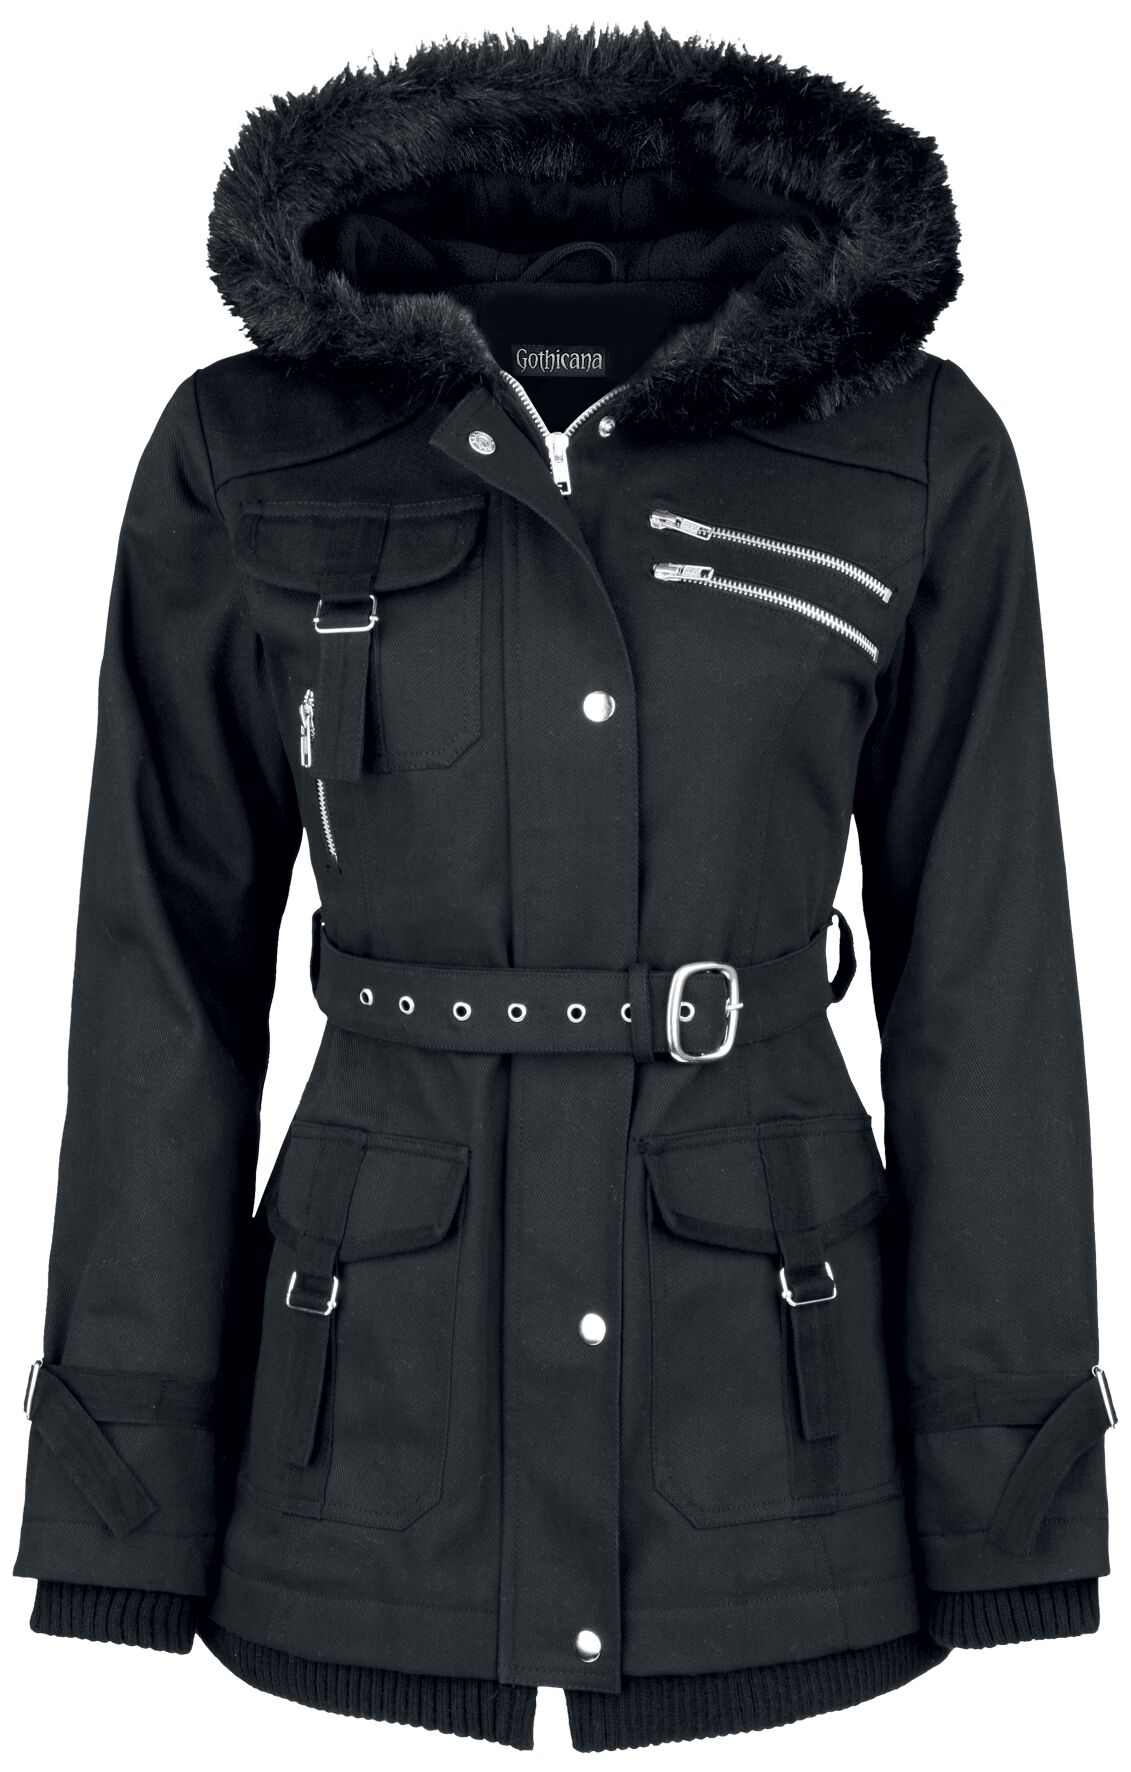 Gothicana by EMP - Gothic Winterjacke - Multi Pocket Jacket - S bis 6XL - für Damen - Größe XL - schwarz